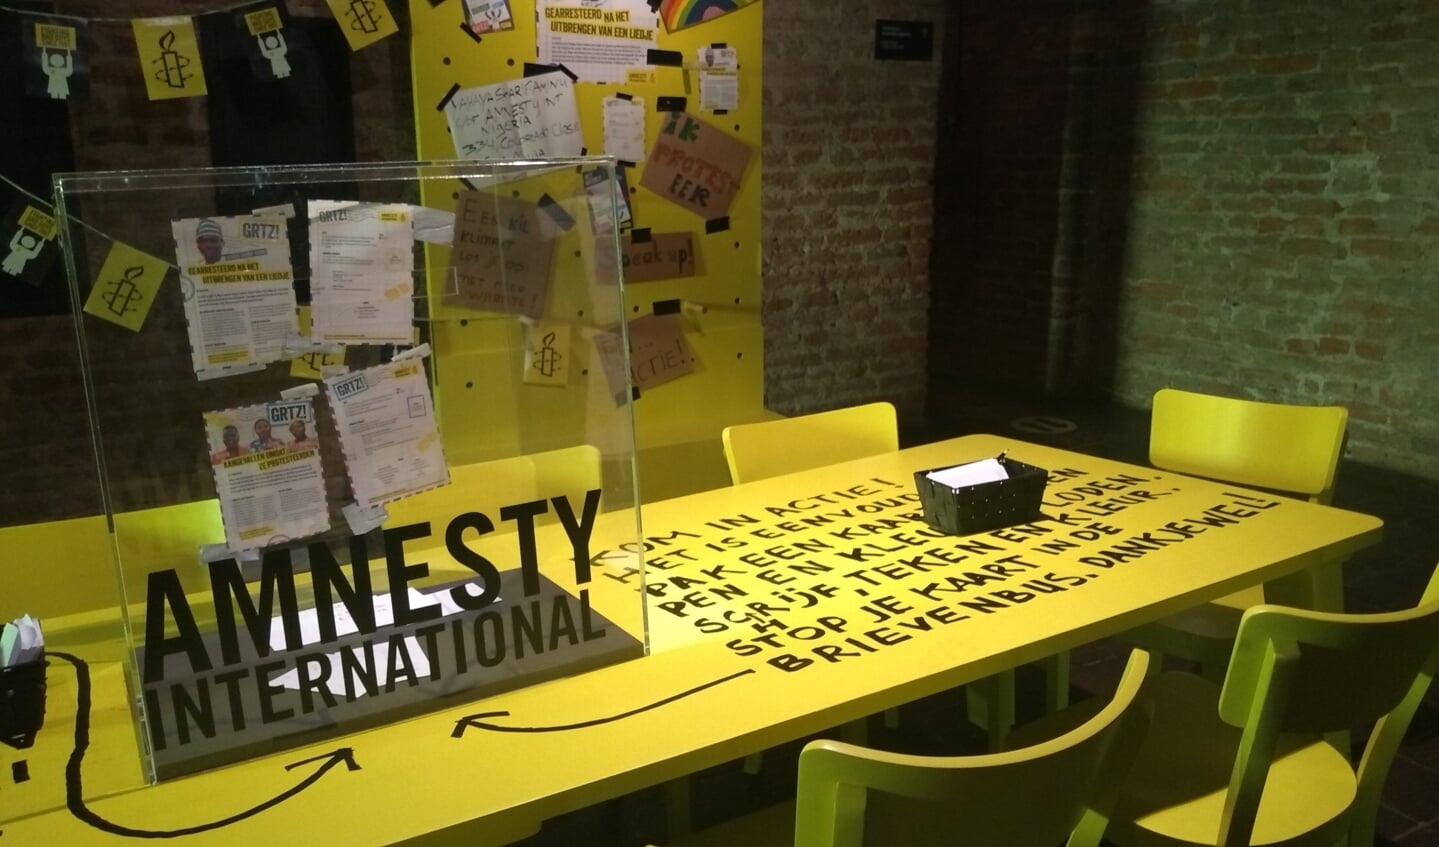 Aan tafel kun je brieven of protestliederen schrijven over pollitieke gevangenen